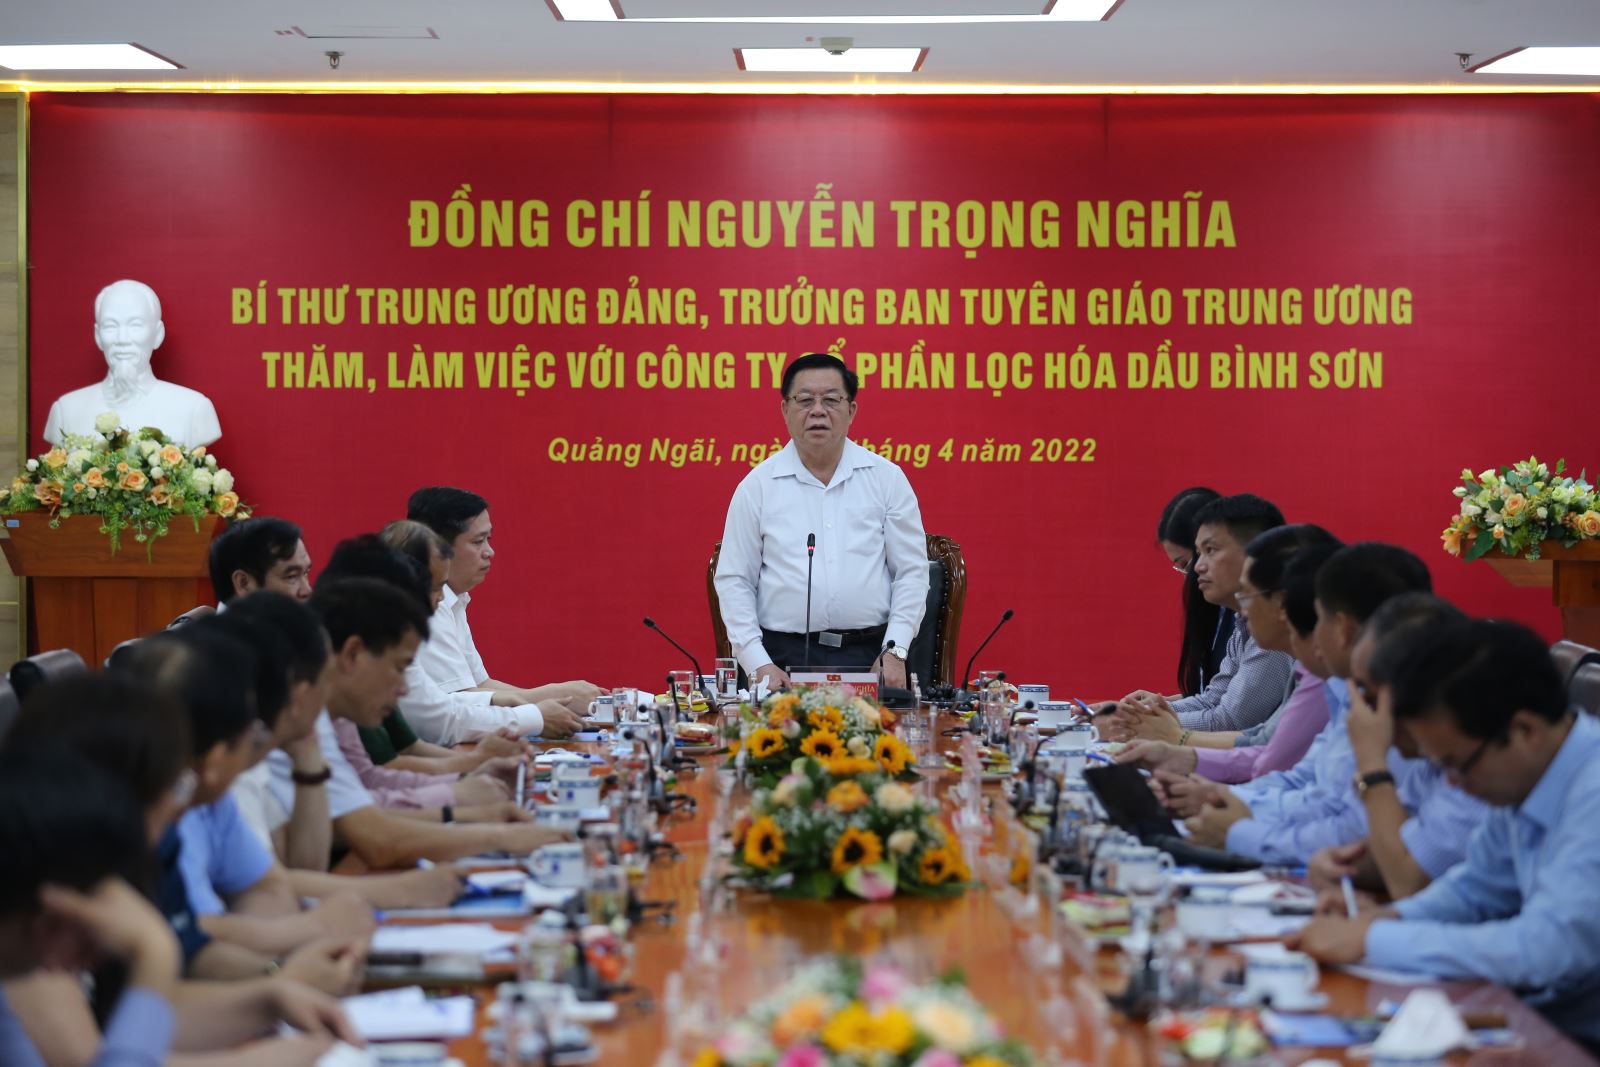 Bí thư Trung ương Đảng, Trưởng ban Tuyên giáo Trung ương Nguyễn Trọng Nghĩa thăm và làm việc với BSR